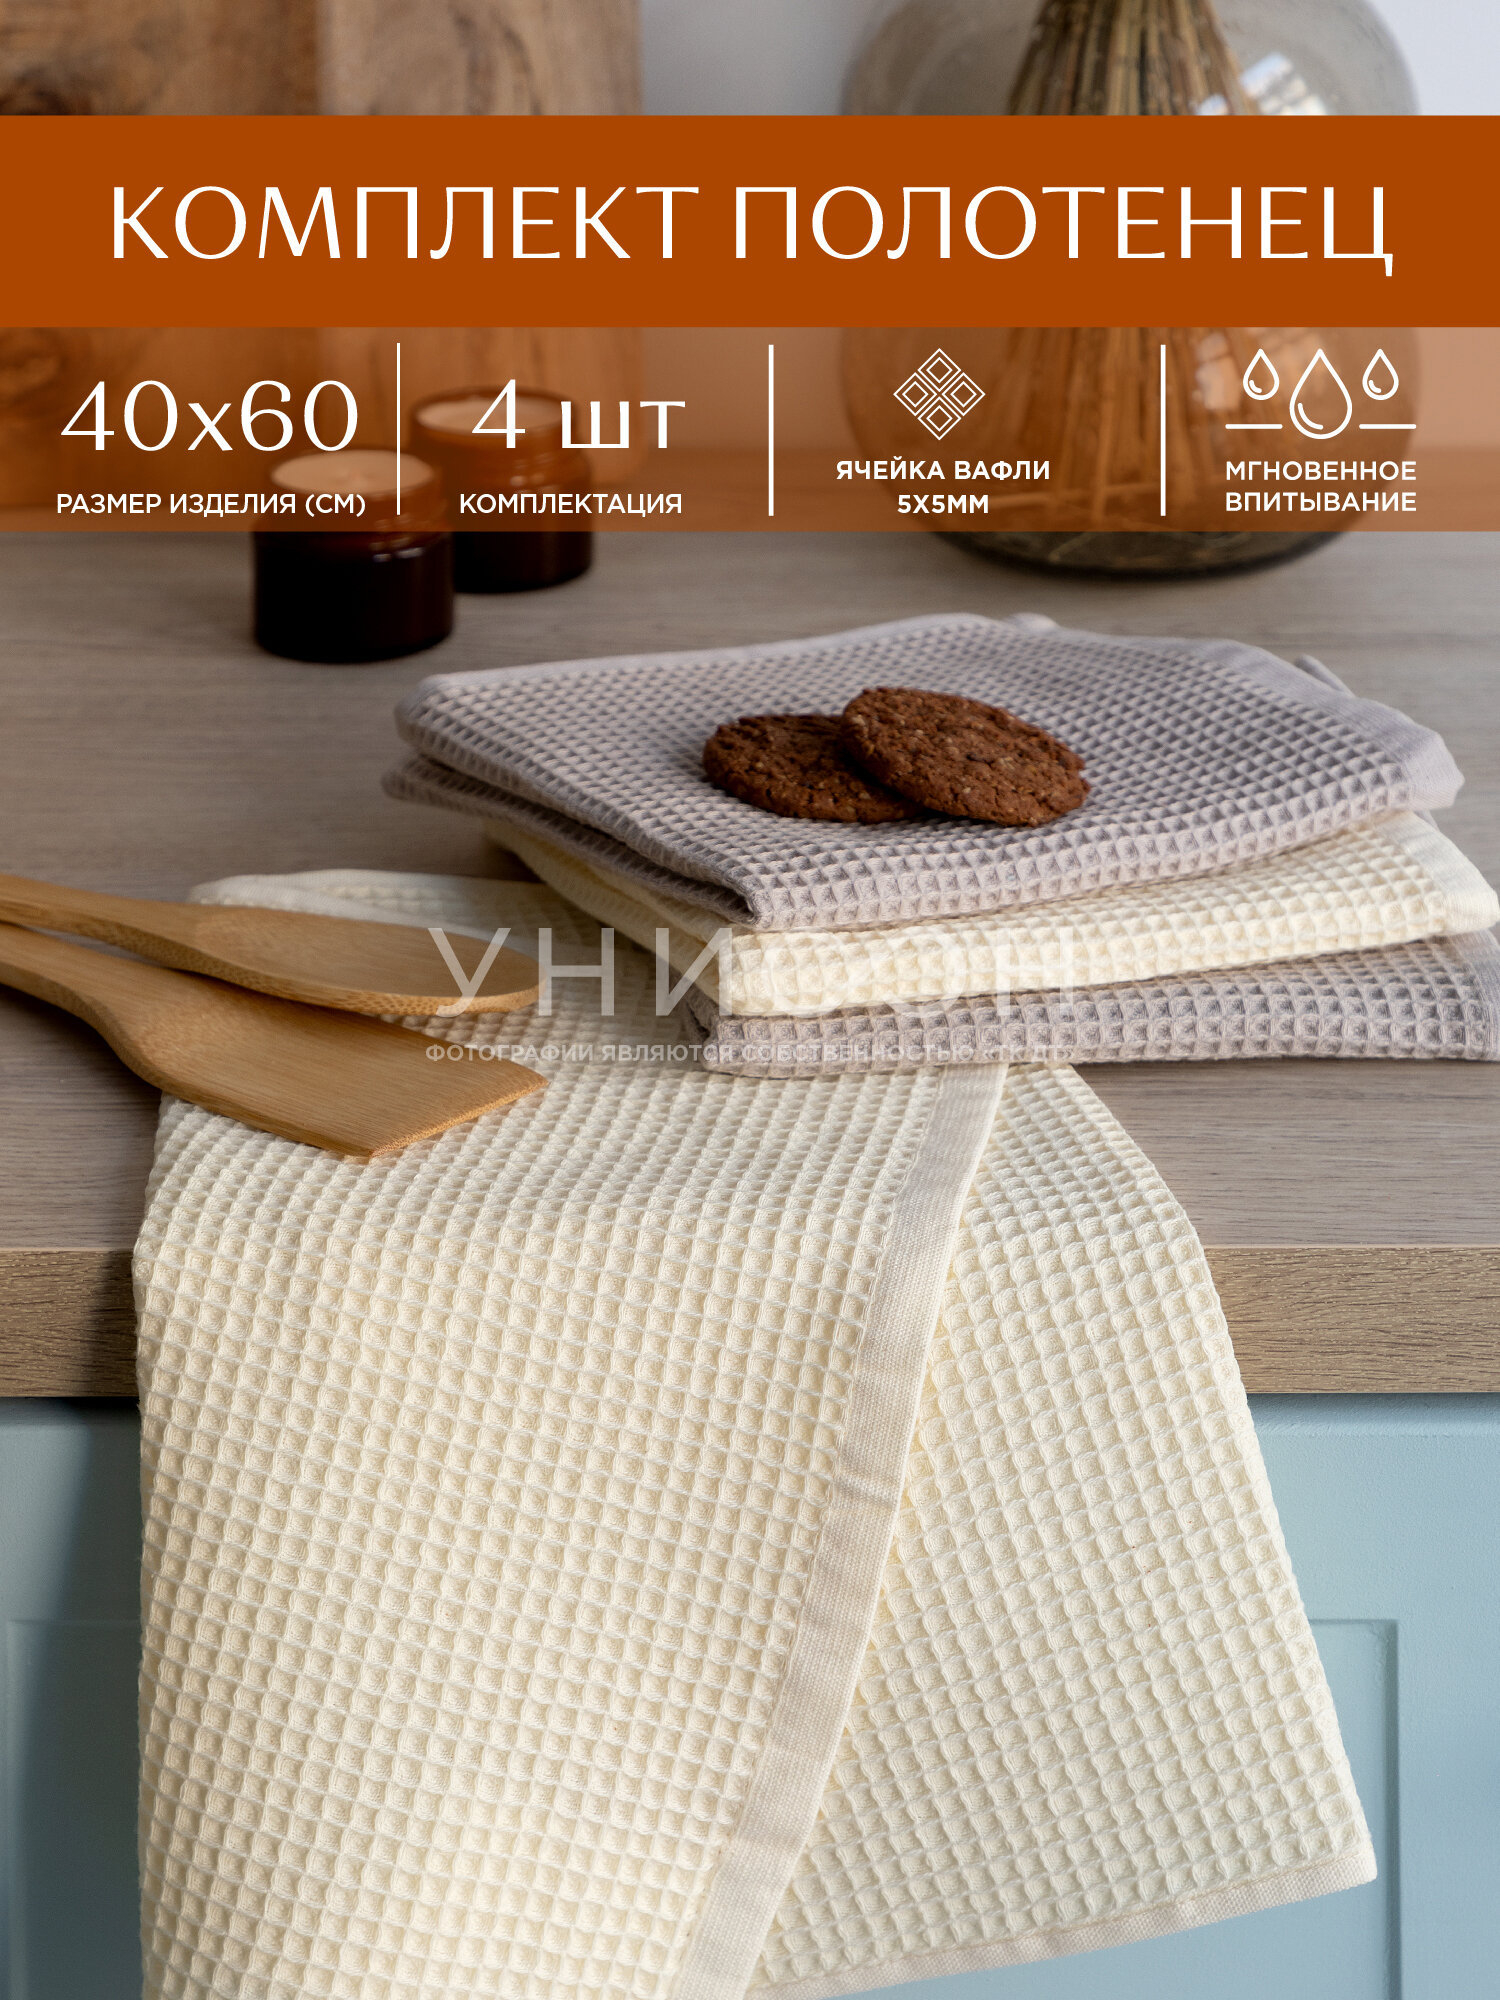 Комплект вафельных полотенец 40х60 (4 шт.) "Унисон" ecru/beige - фотография № 19